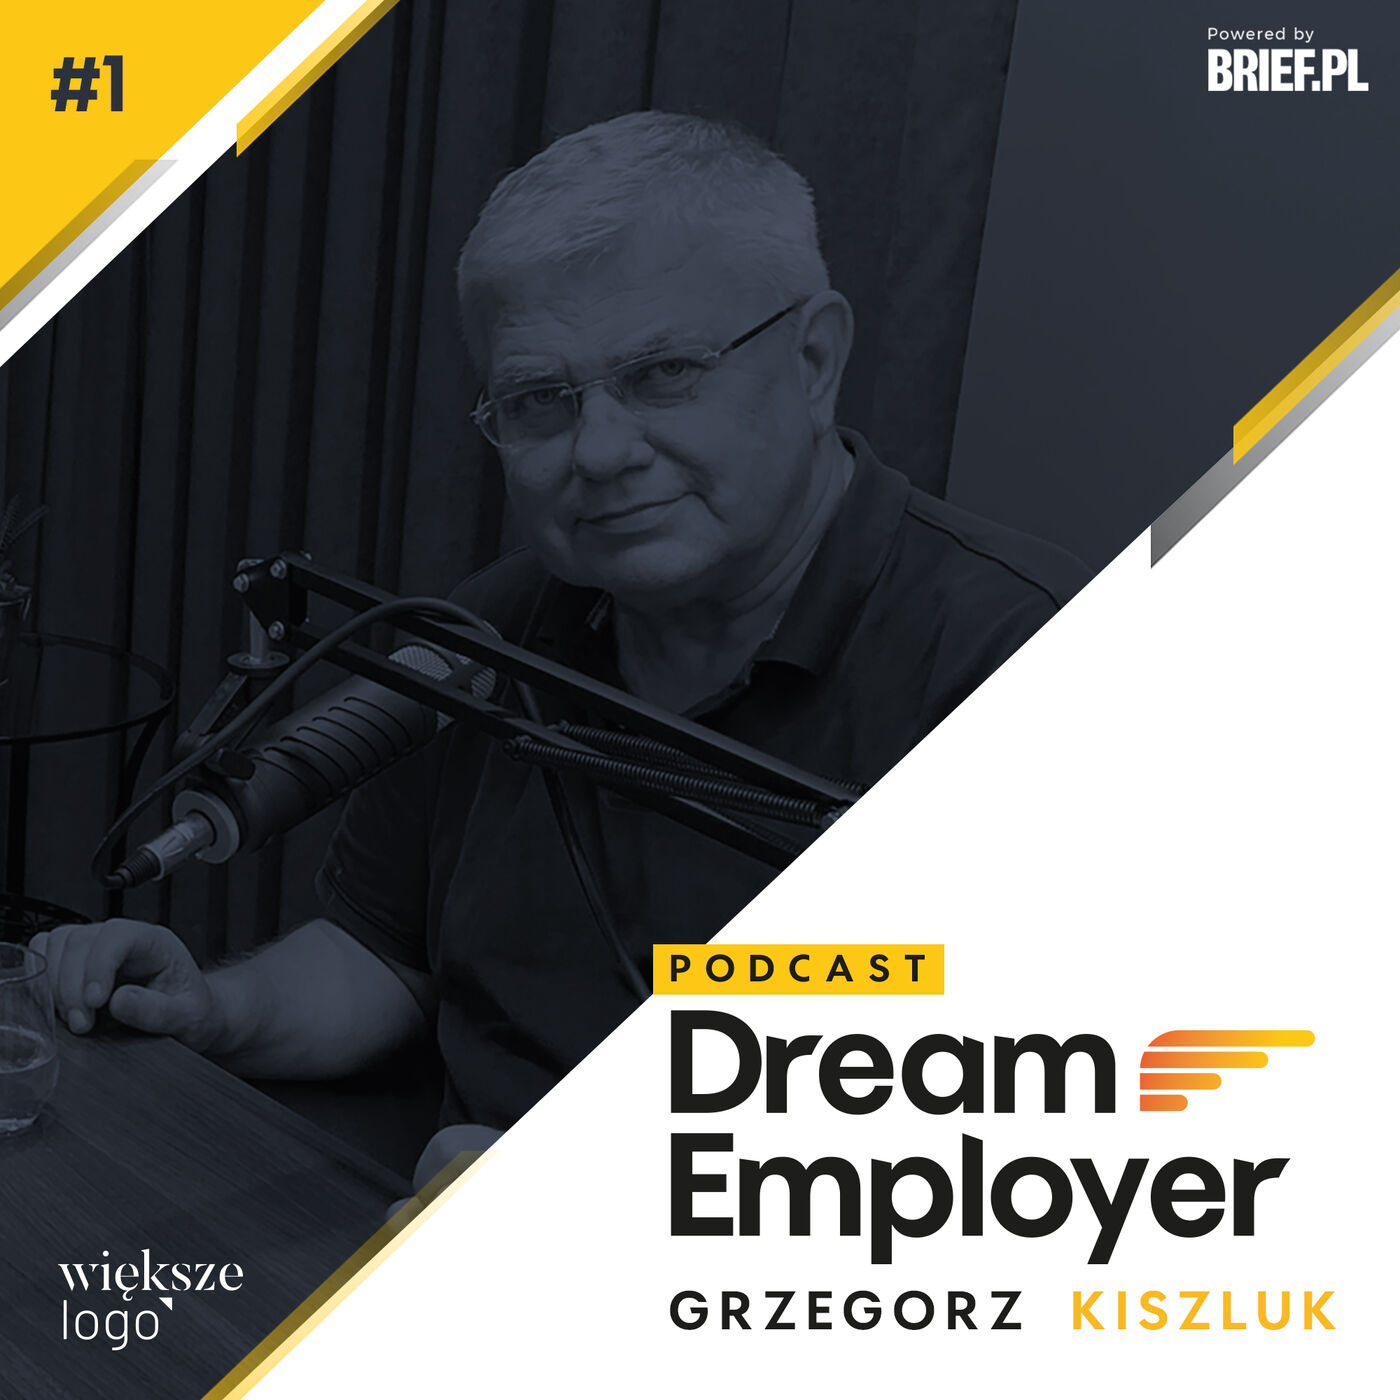 Podcast #DreamEmployer 01- Grzegorz Kiszluk, brief.pl